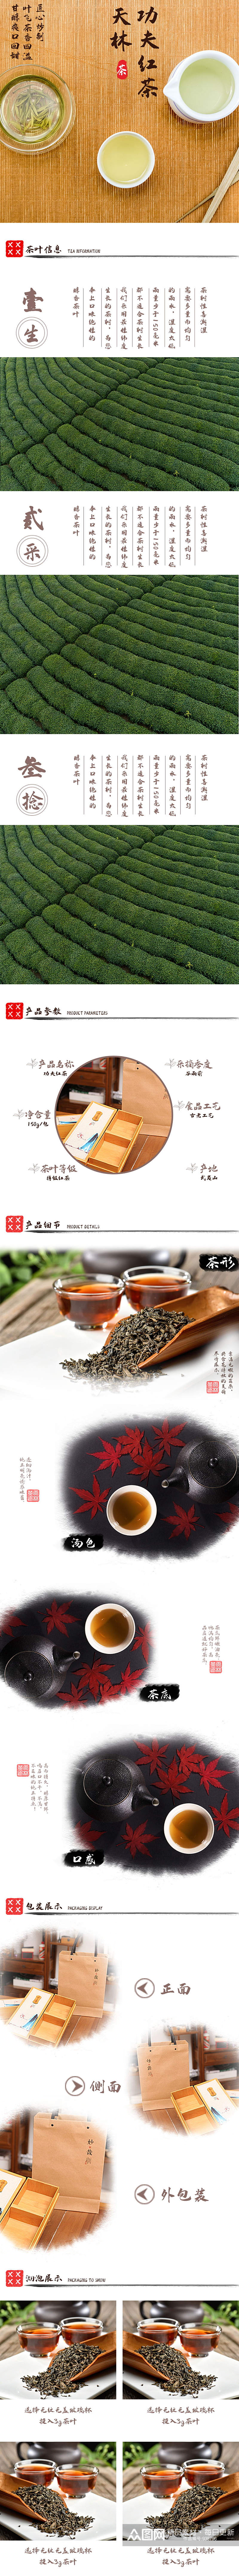 淘宝中国风茶叶详情页模板素材